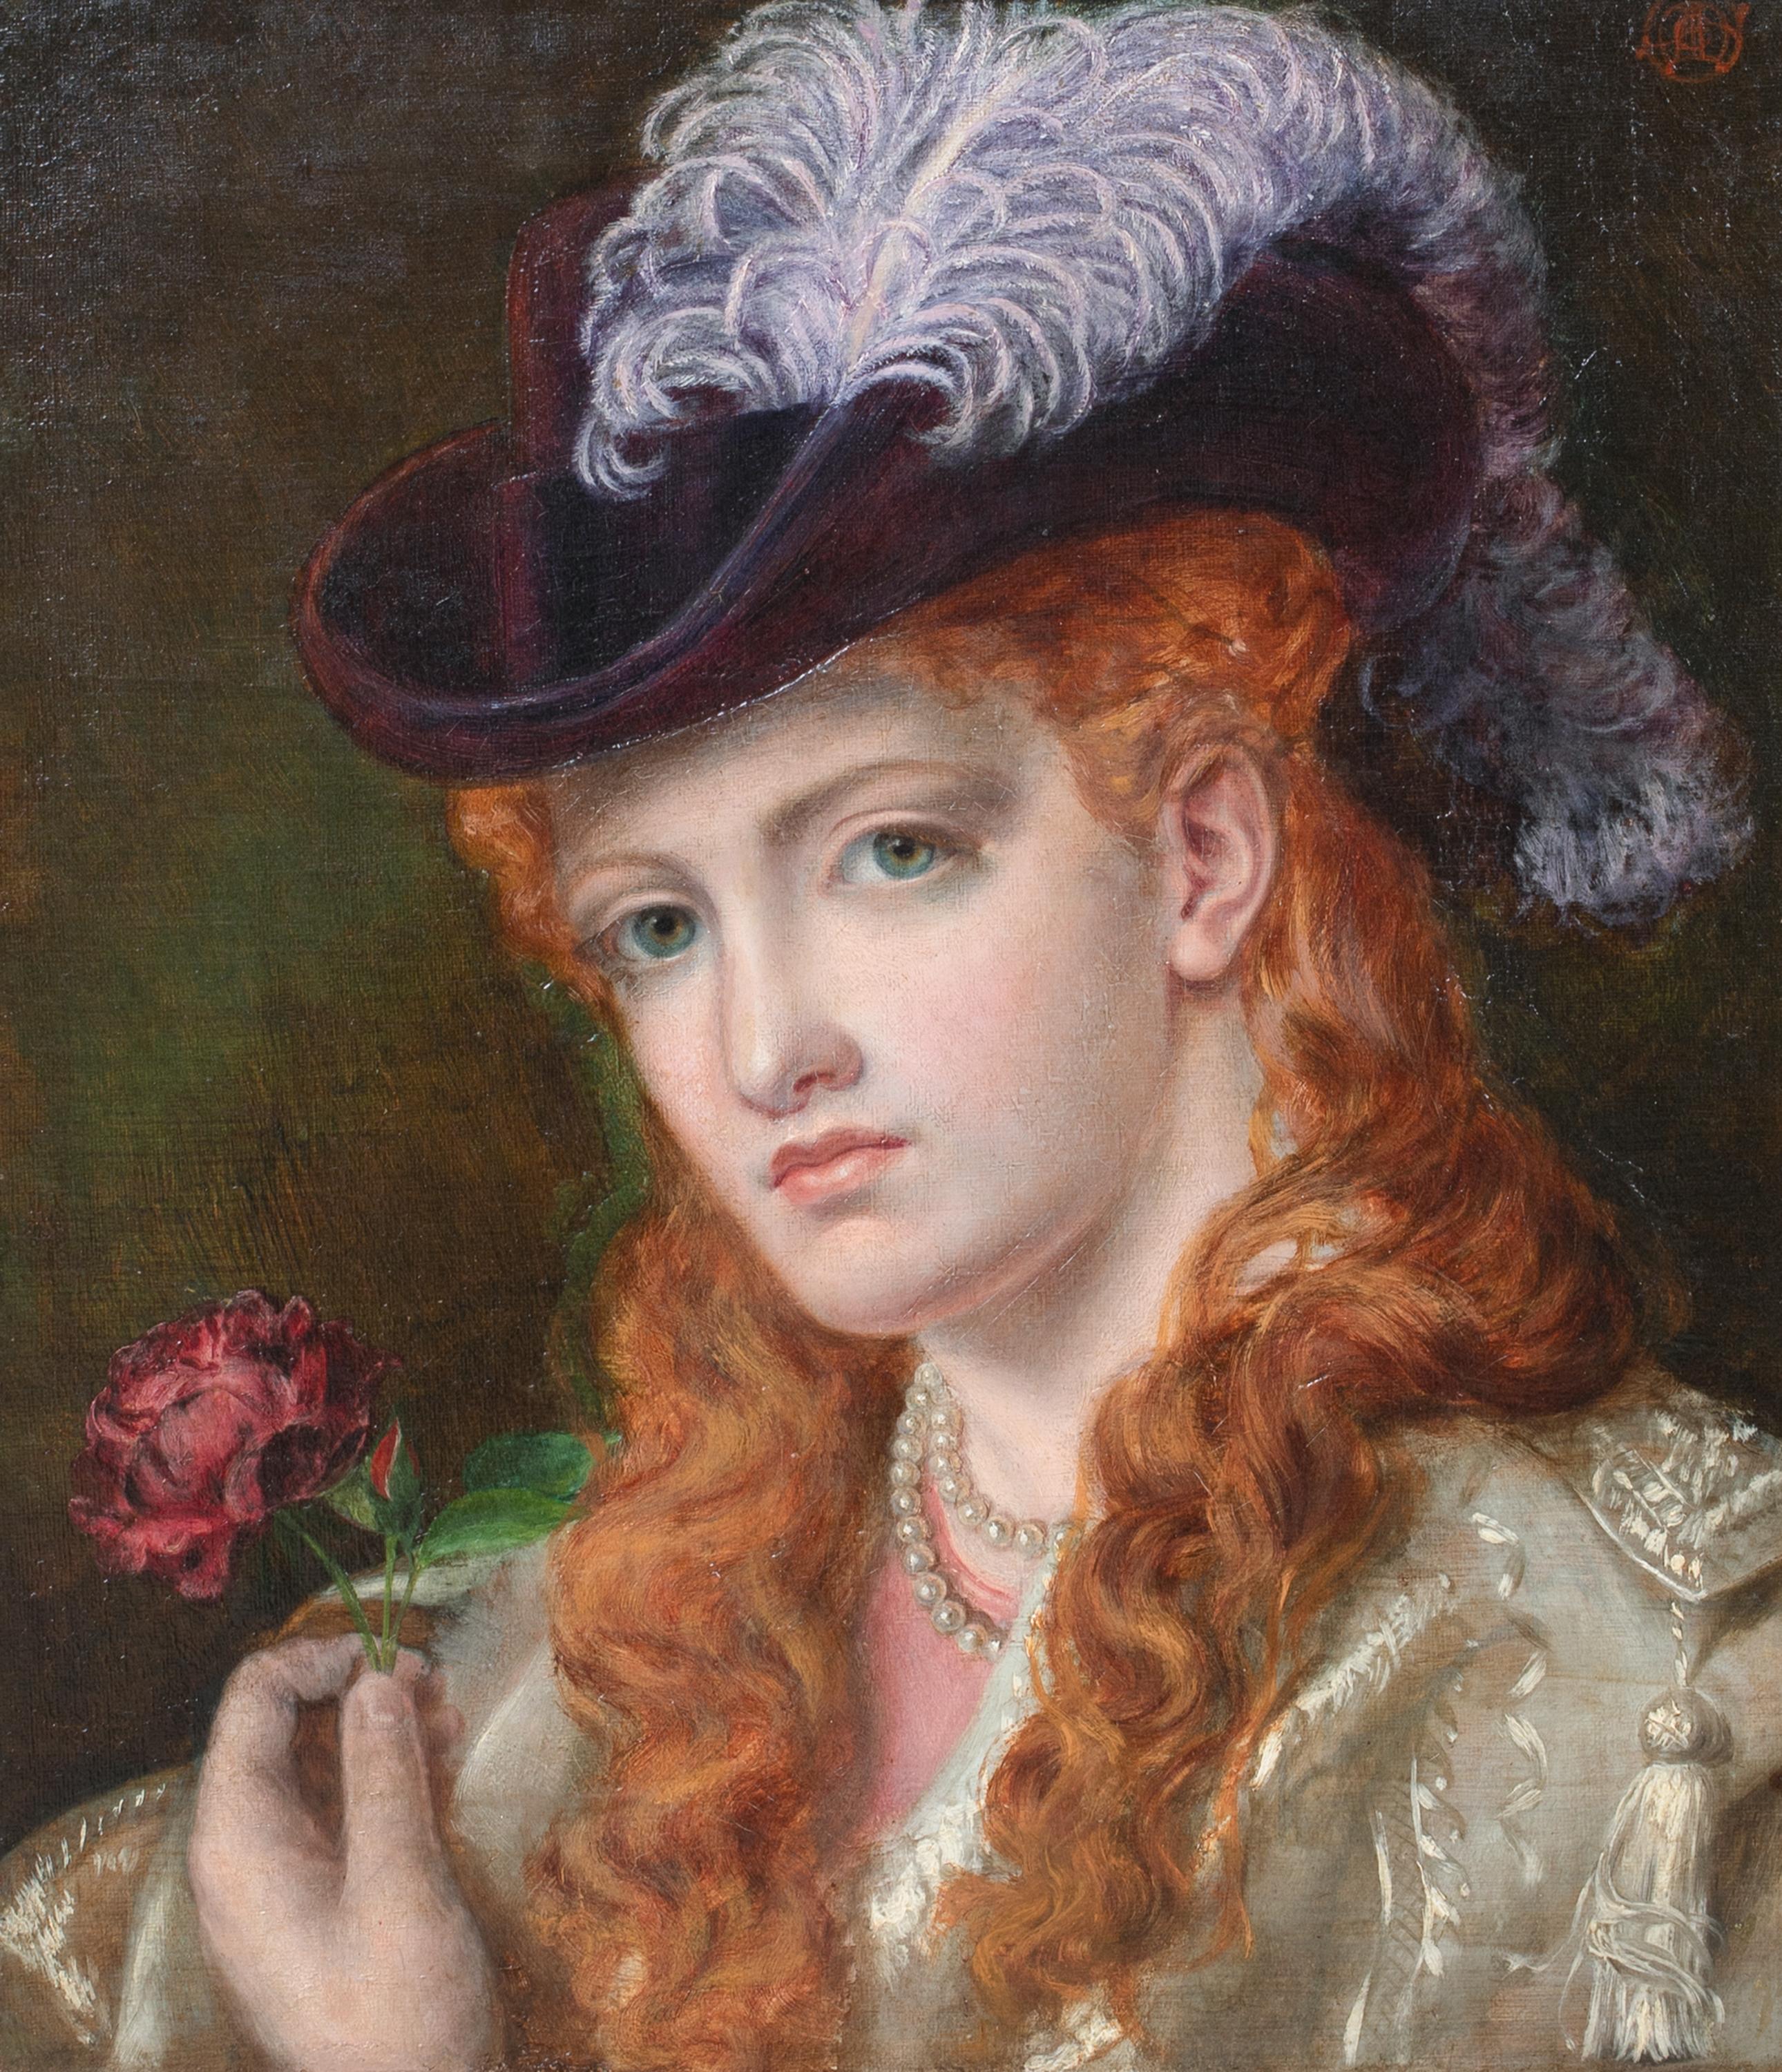 The Rose, 19e siècle

par Emma SANDYS (1834-1877) similaire à 70 000

Grand portrait préraphaélite du XIXe siècle d'une jeune fille aux cheveux roux tenant une rose, huile sur toile d'Emma Sandys. Portrait en excellent état de la jeune fille tenant